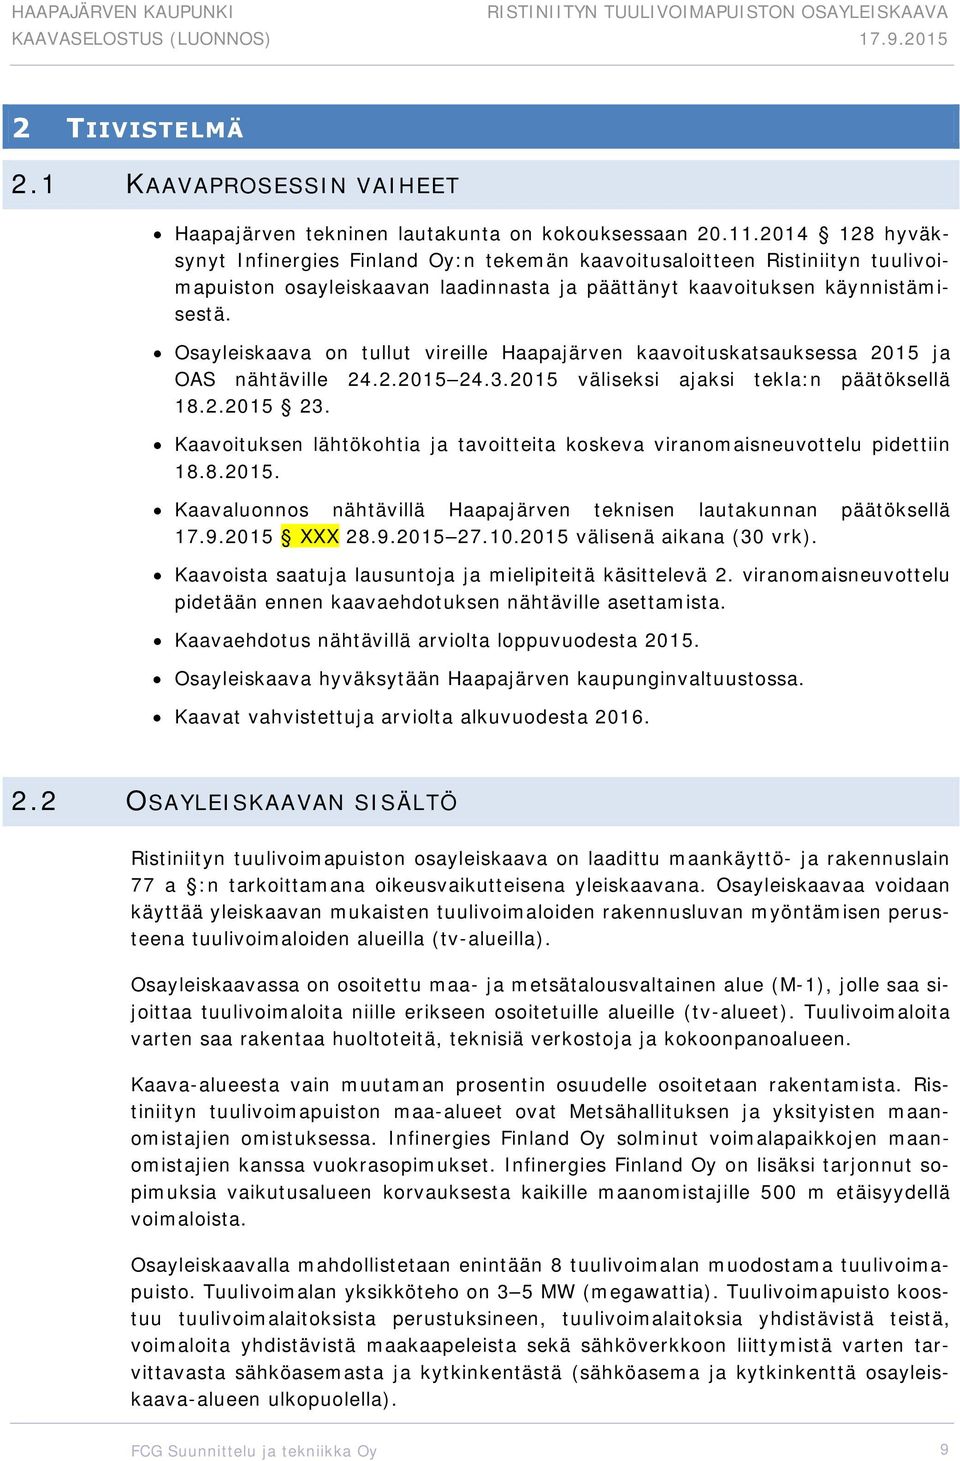 Osayleiskaava on tullut vireille Haapajärven kaavoituskatsauksessa 2015 ja OAS nähtäville 24.2.2015 24.3.2015 väliseksi ajaksi tekla:n päätöksellä 18.2.2015 23.